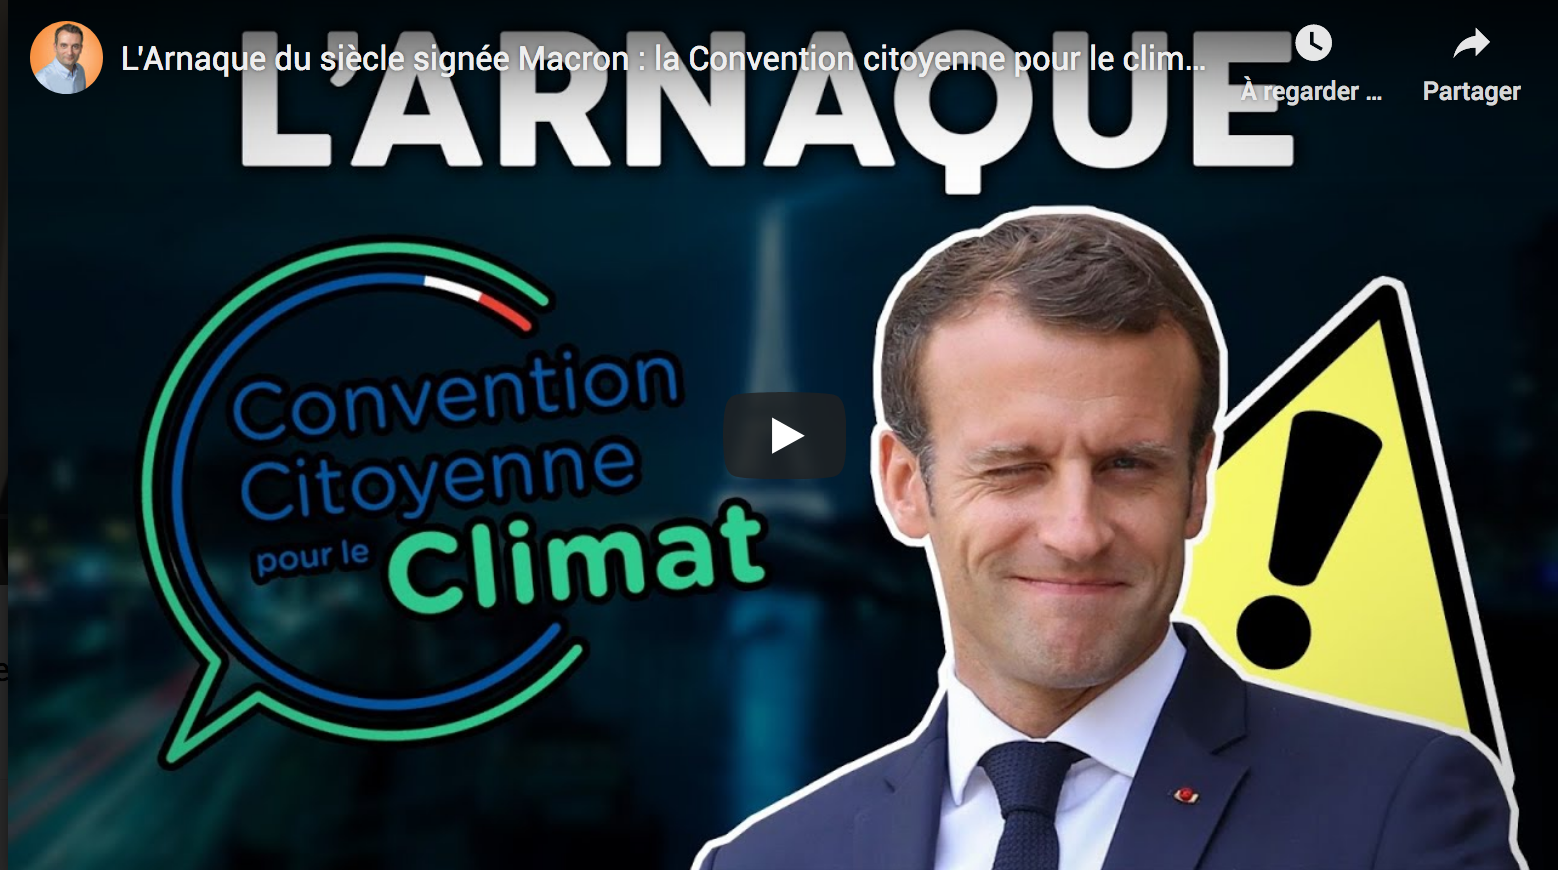 L’arnaque du siècle signée Macron : la Convention citoyenne pour le climat ! (Florian Philippot)